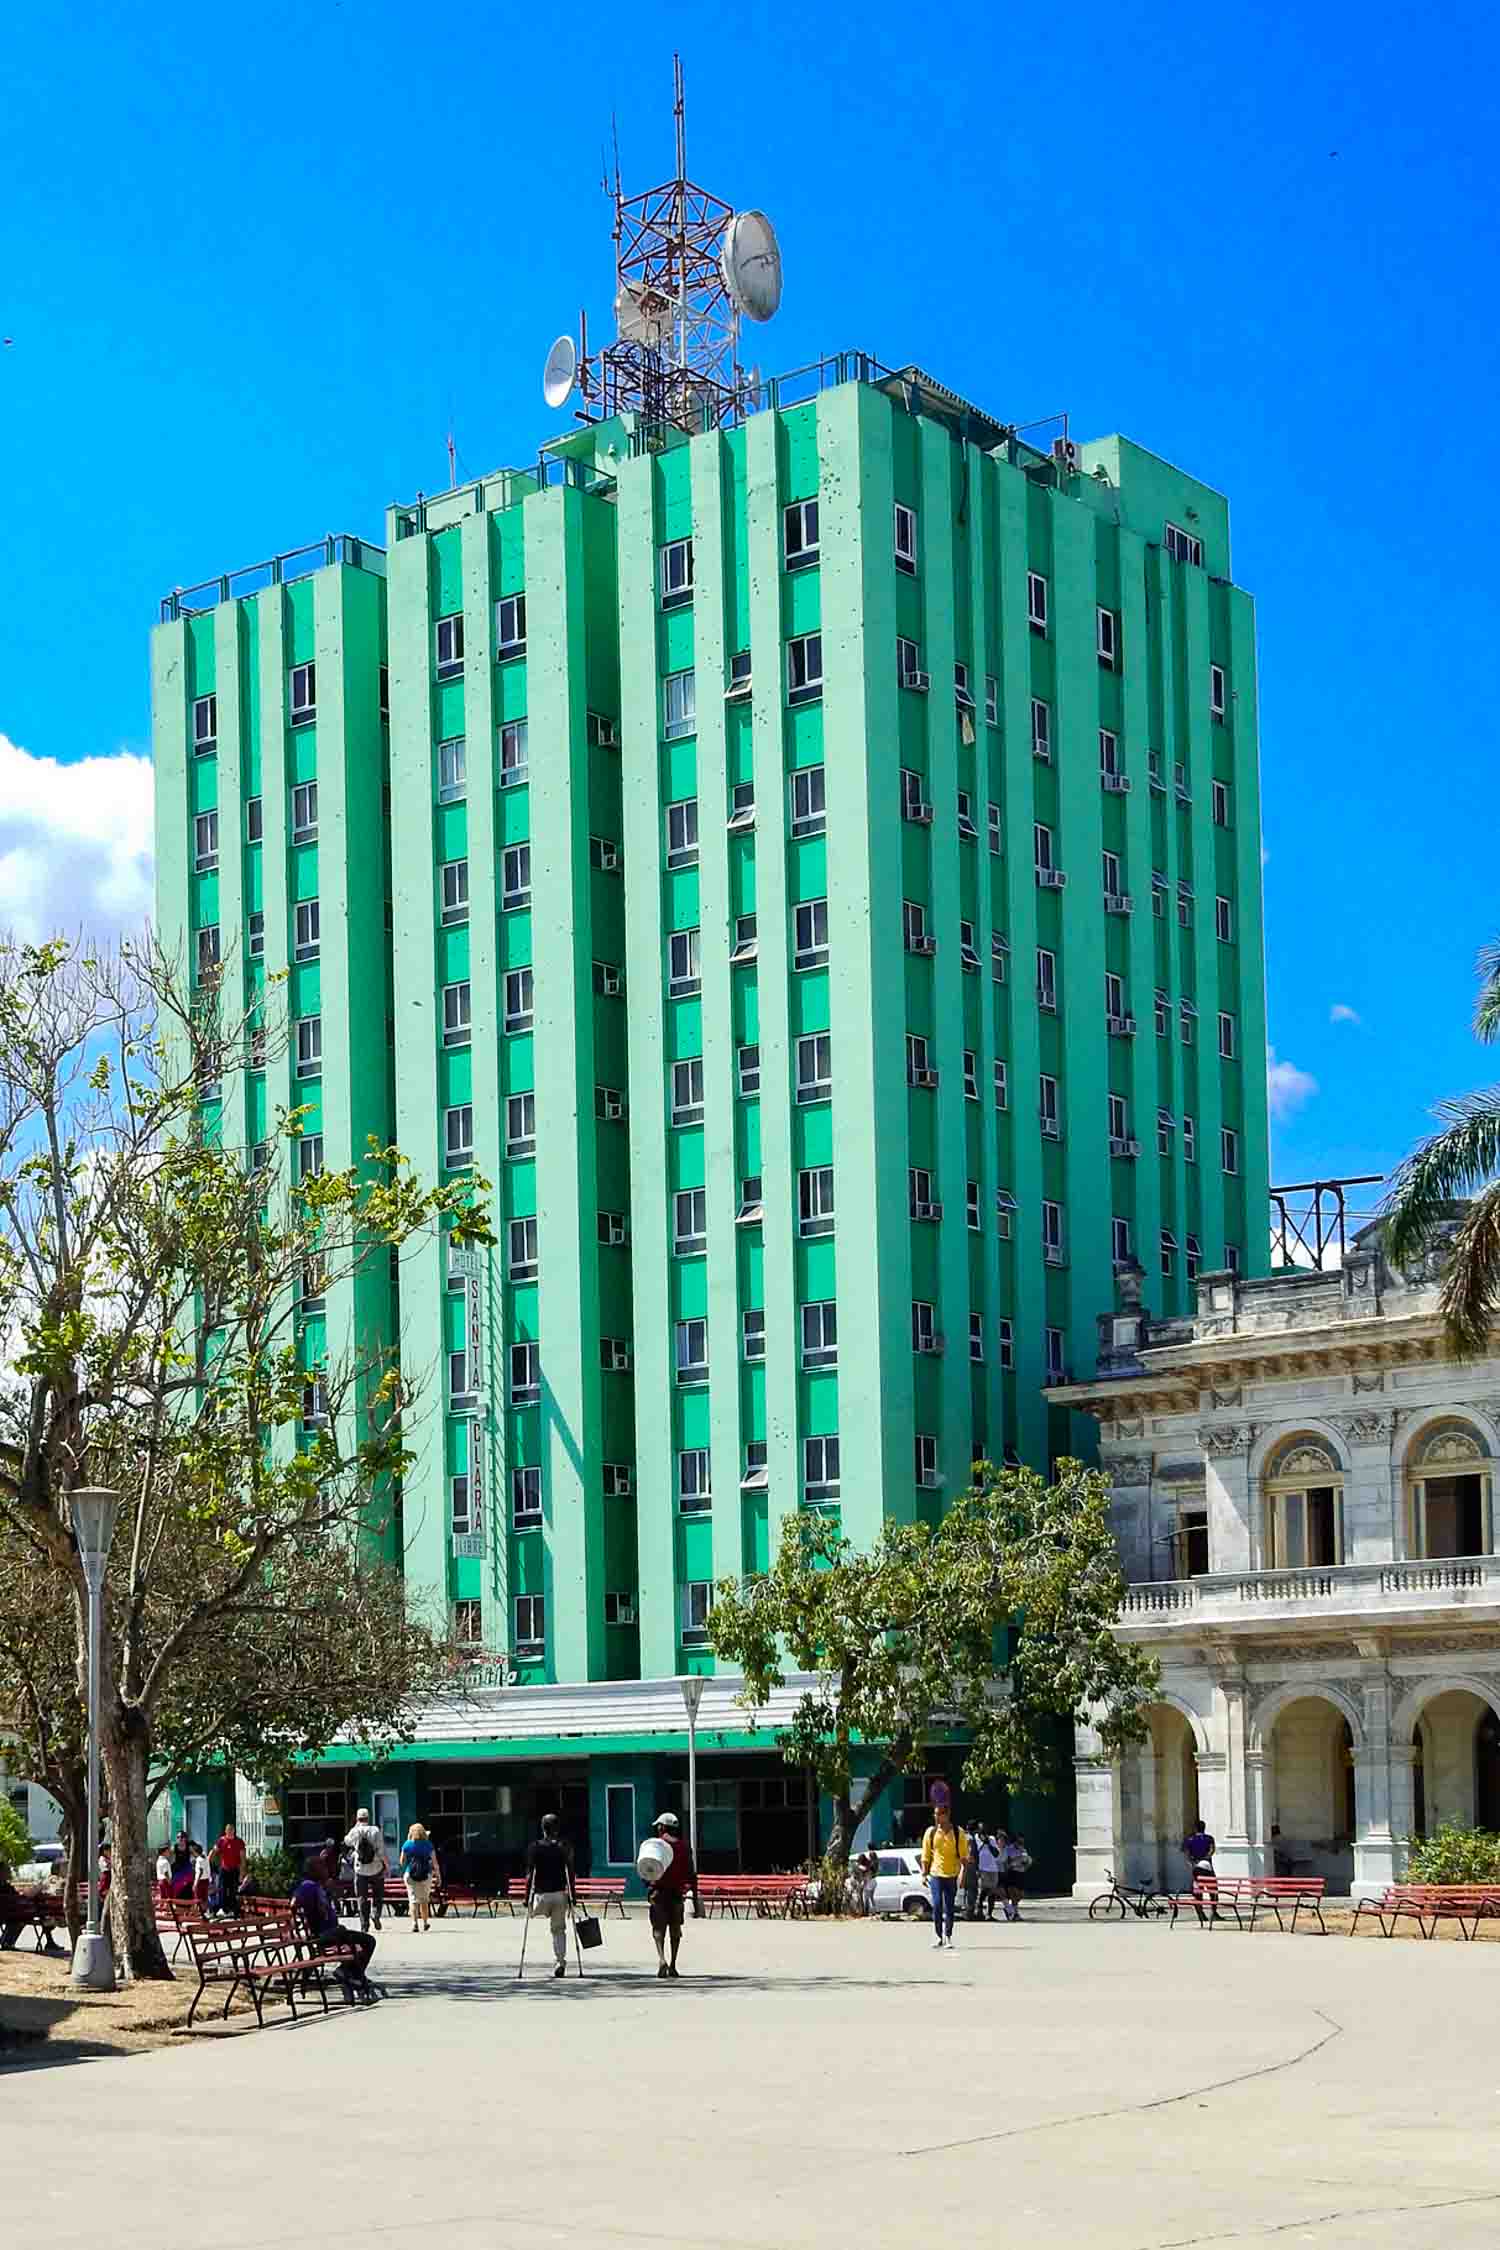 Hotel Santa Clara Libre in Cuba